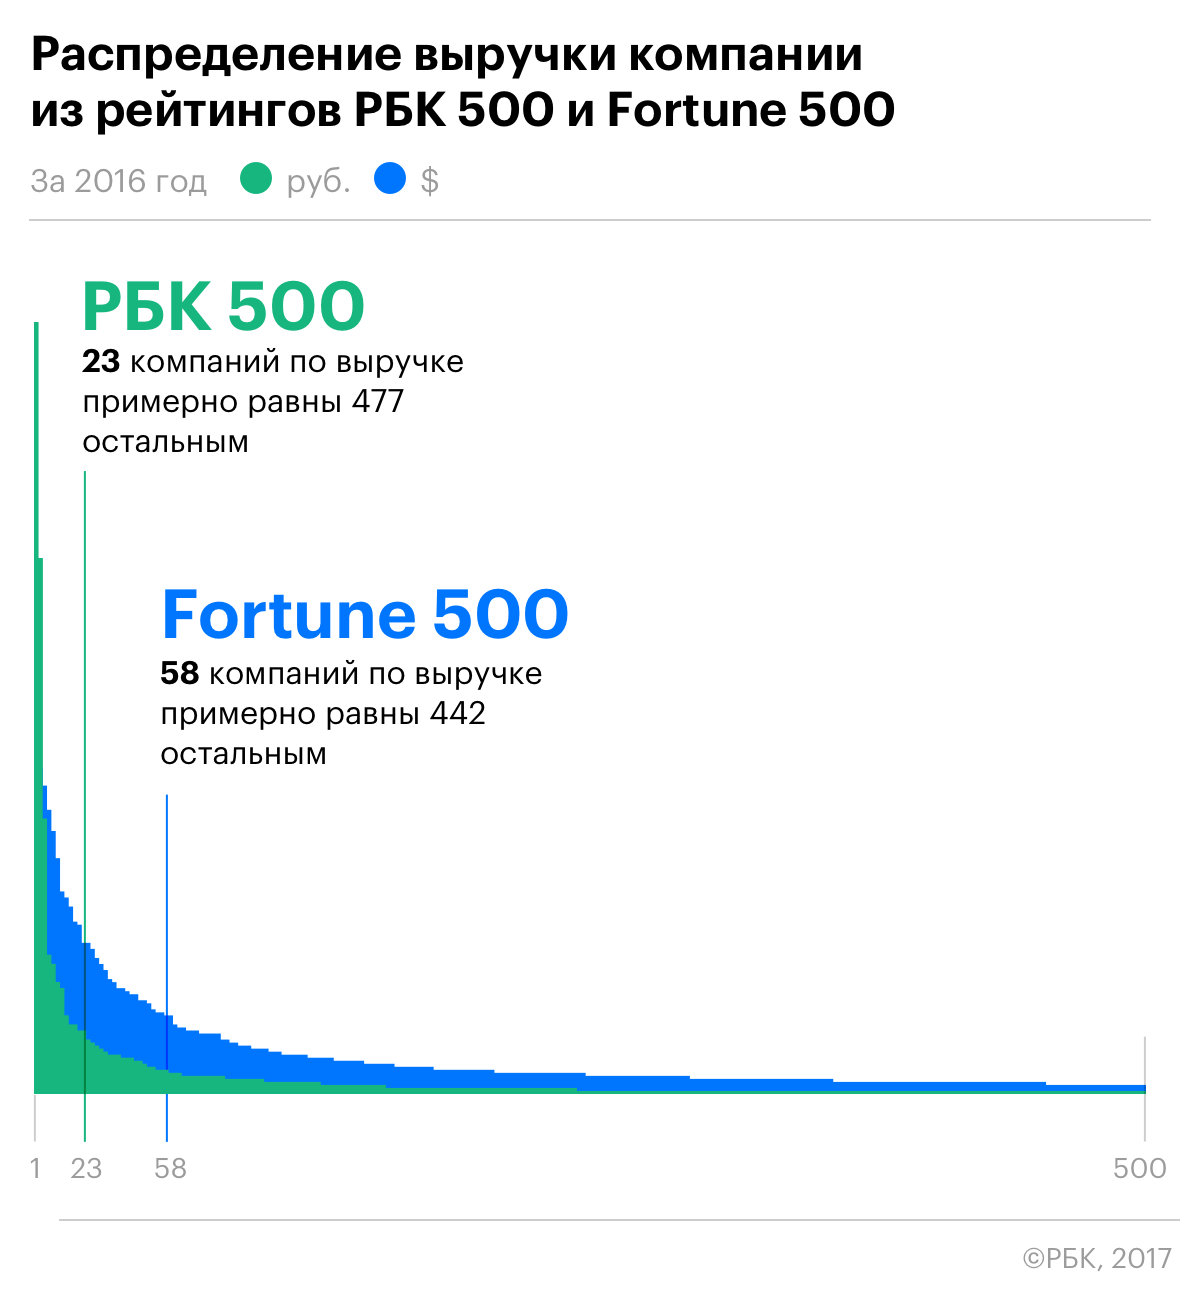 Большая разница: сравнение РБК 500 и Fortune 500